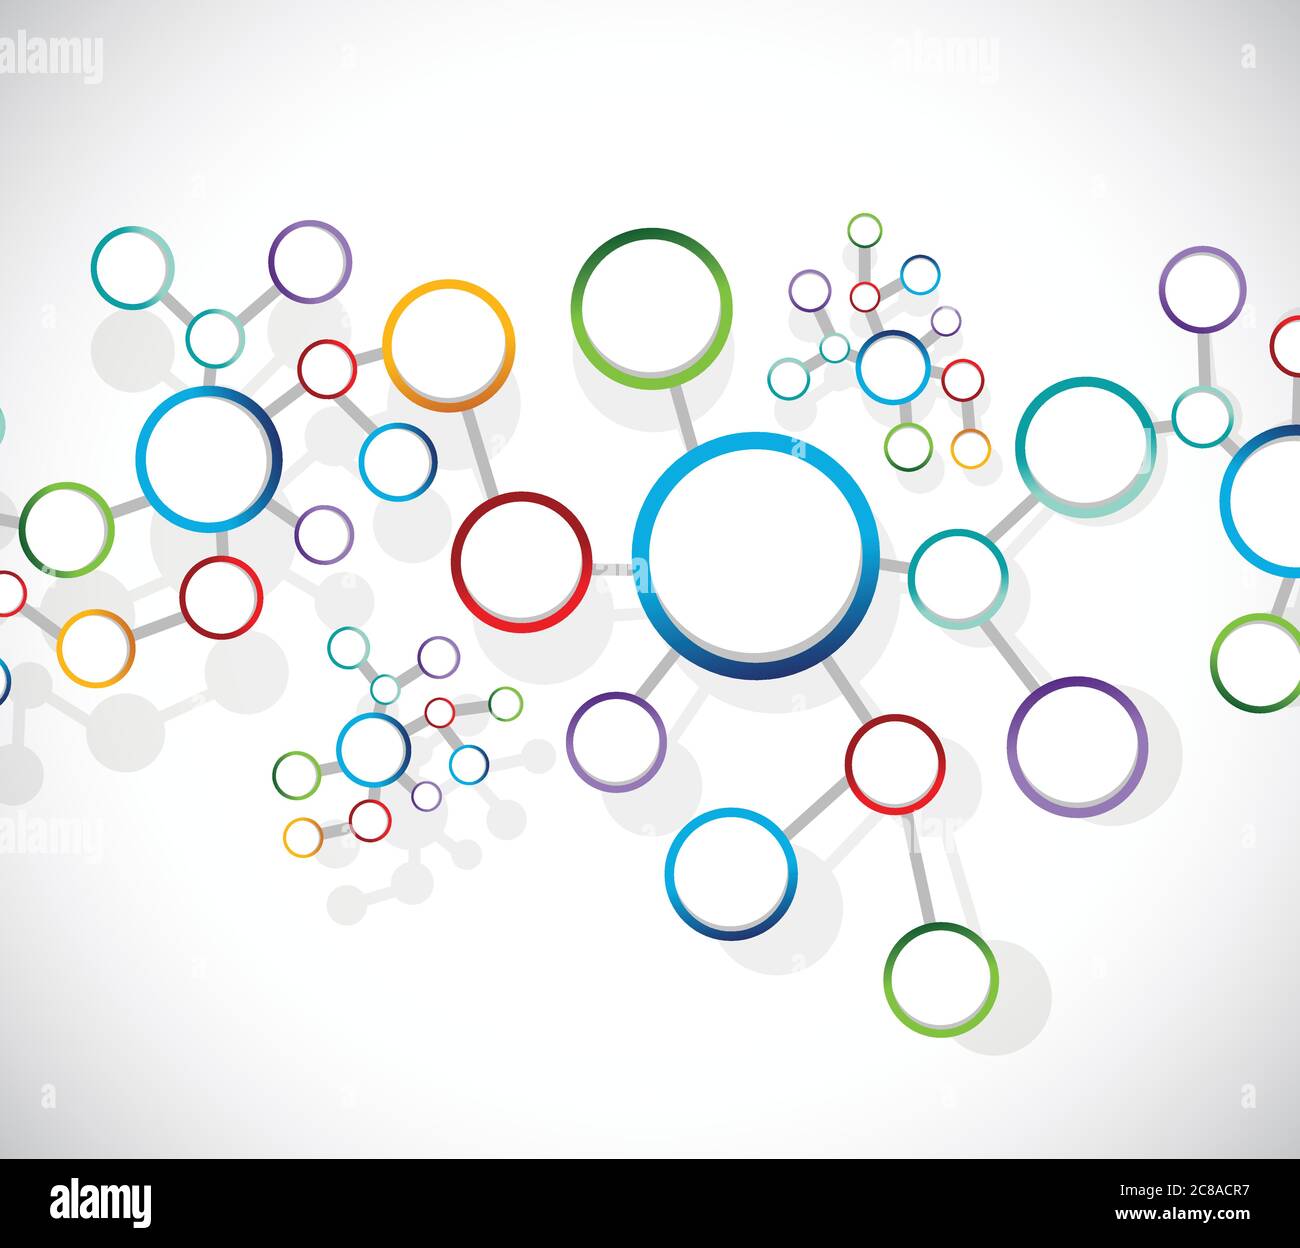 Atome Diagramm Link Netzwerk Verbindung Illustration Design auf einem weißen Hintergrund Stock Vektor